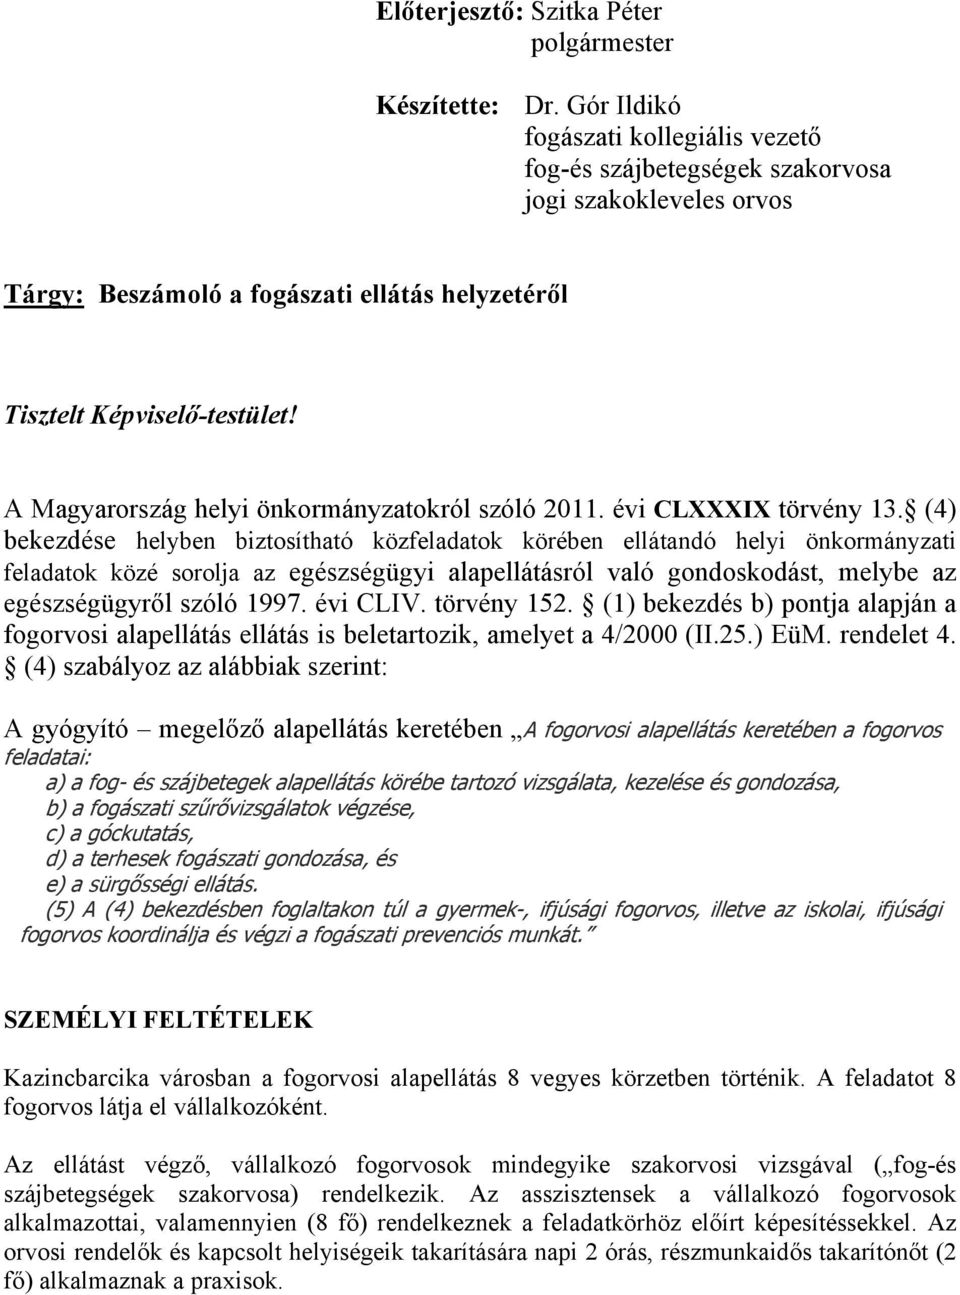 A Magyarország helyi önkormányzatokról szóló 2011. évi CLXXXIX törvény 13.